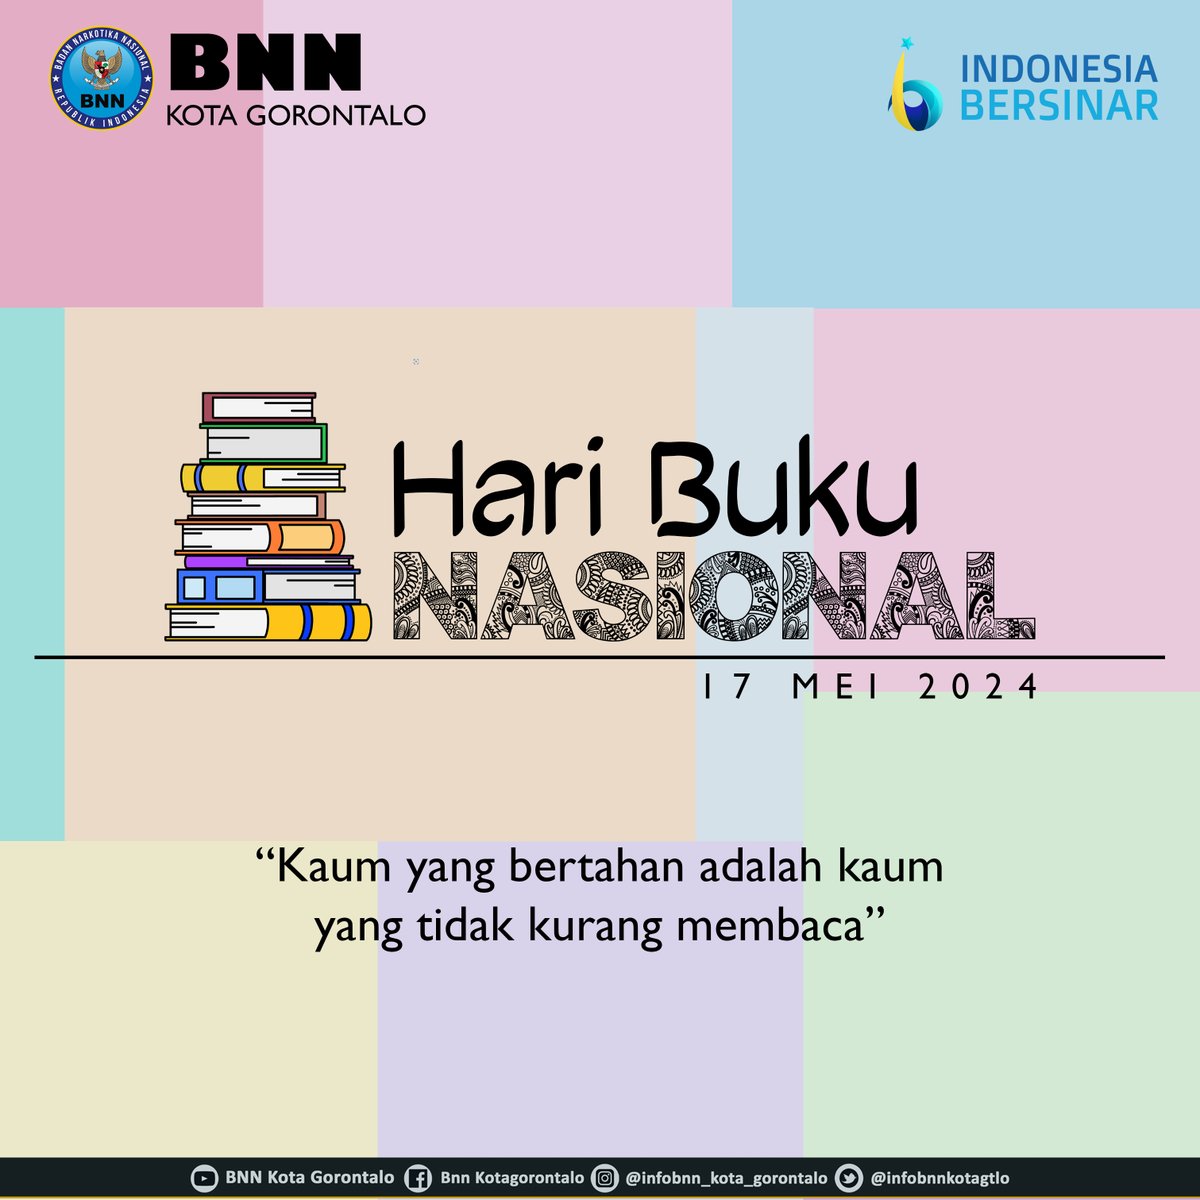 BNN Kota Gorontalo Mengucapkan Selamat Hari Buku Nasional.
17 Mei 2024

Membaca  Adalah Kunci Kemajuan Bangsa.Mari Budayakan Membaca Demi Indonesia Yang Cerdas Dan Berprestasi!

#indonesiabersinar 
#indonesiadrugfree 
#haribukunasional